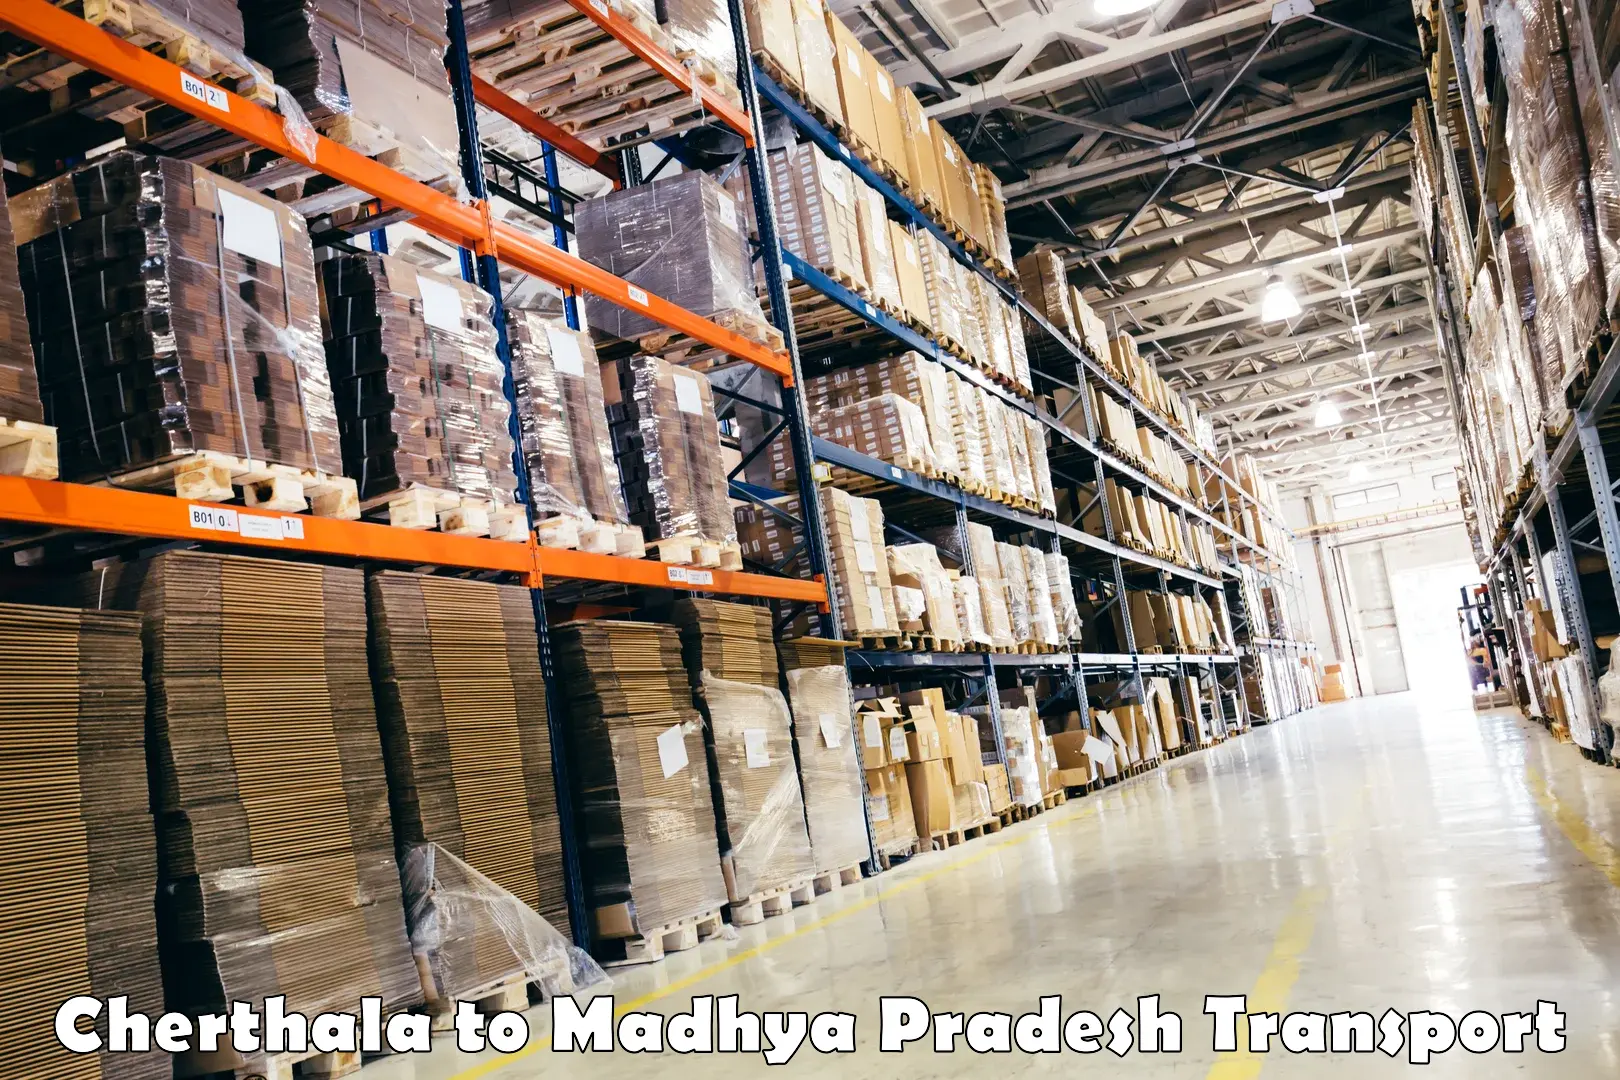 Commercial transport service Cherthala to Madhya Pradesh